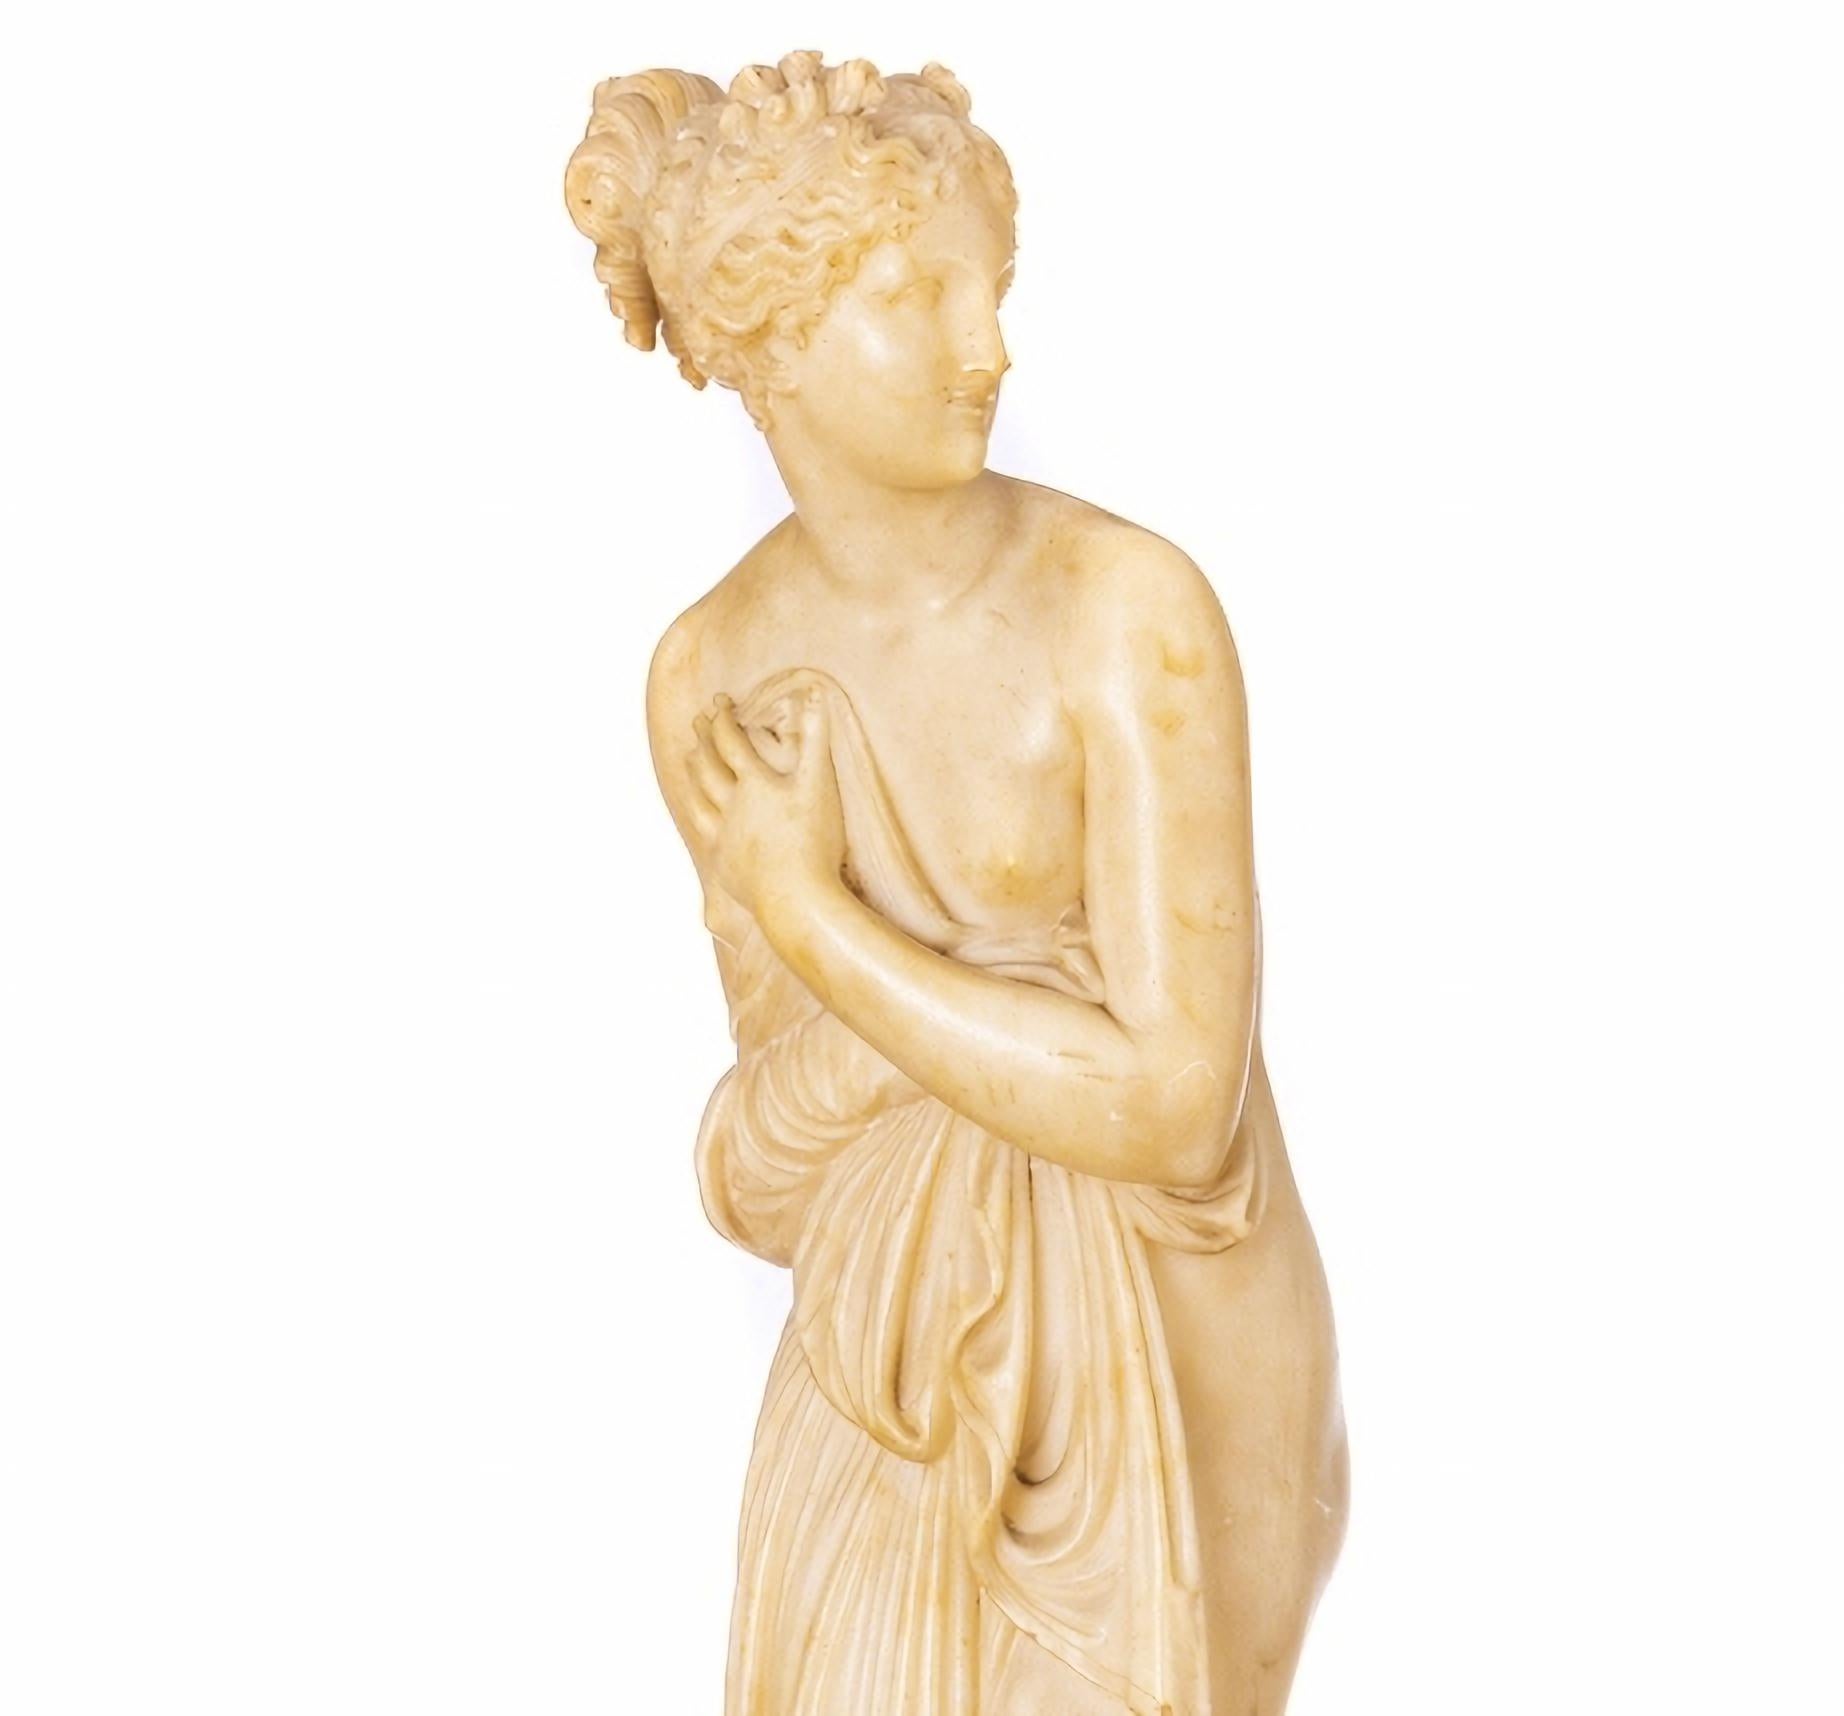 VENUS IN ALABASTER

Italienische Skulptur des 19. Jahrhunderts
aus Alabaster, nach einem Modell von António Canova (1757-1882).
Dez. Höhe: 80 cm
Gute Bedingungen.